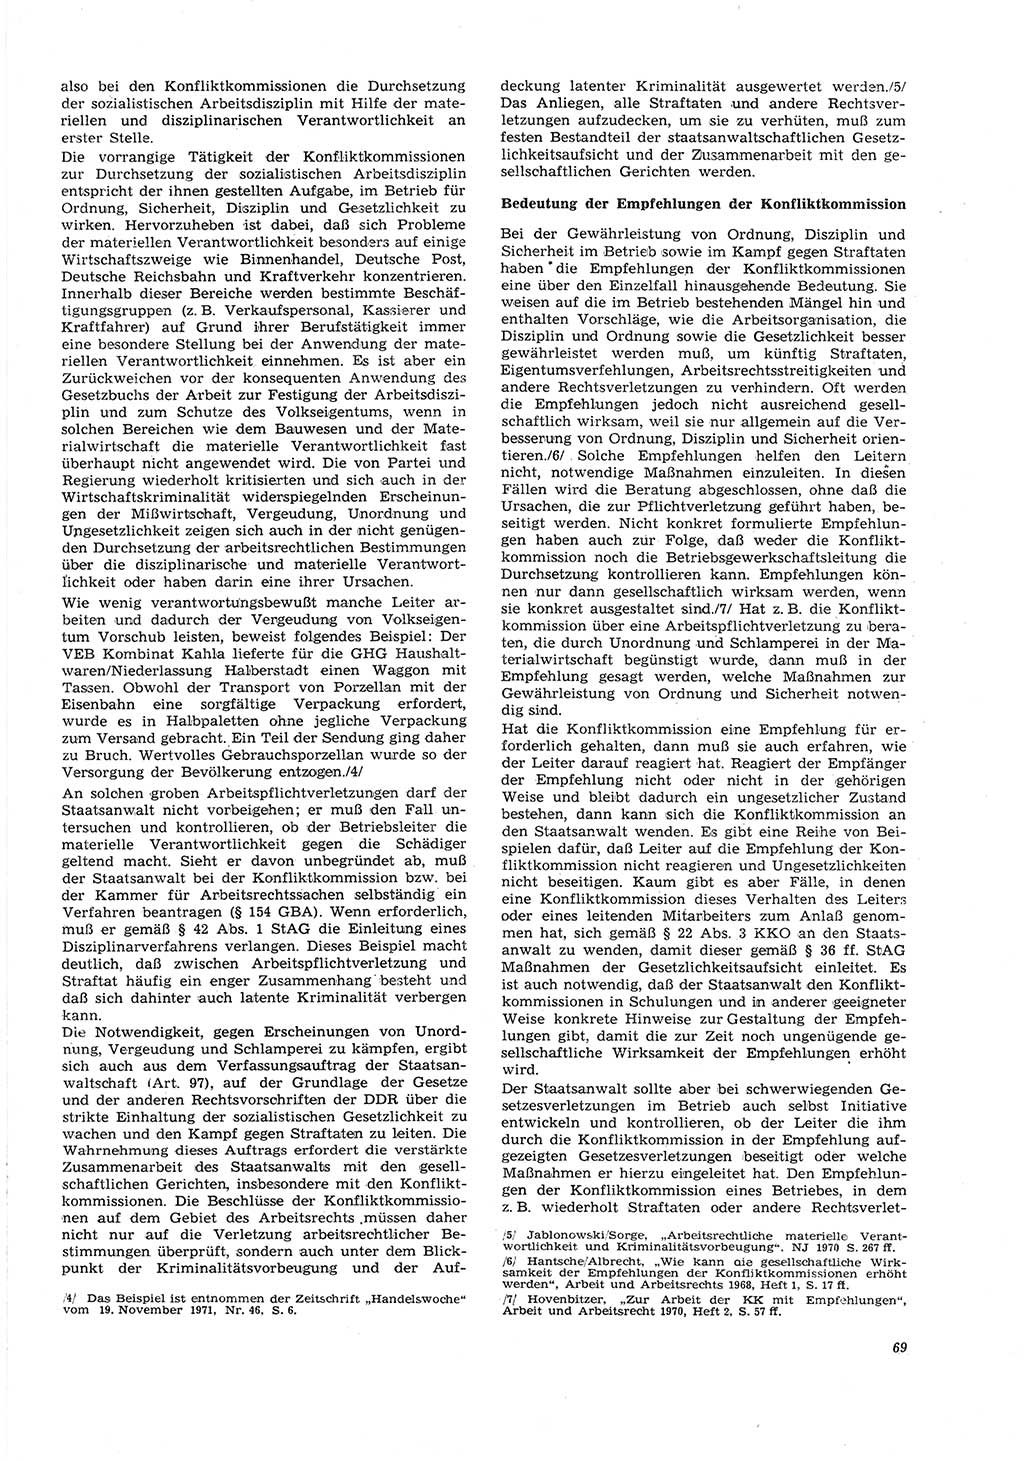 Neue Justiz (NJ), Zeitschrift für Recht und Rechtswissenschaft [Deutsche Demokratische Republik (DDR)], 26. Jahrgang 1972, Seite 69 (NJ DDR 1972, S. 69)